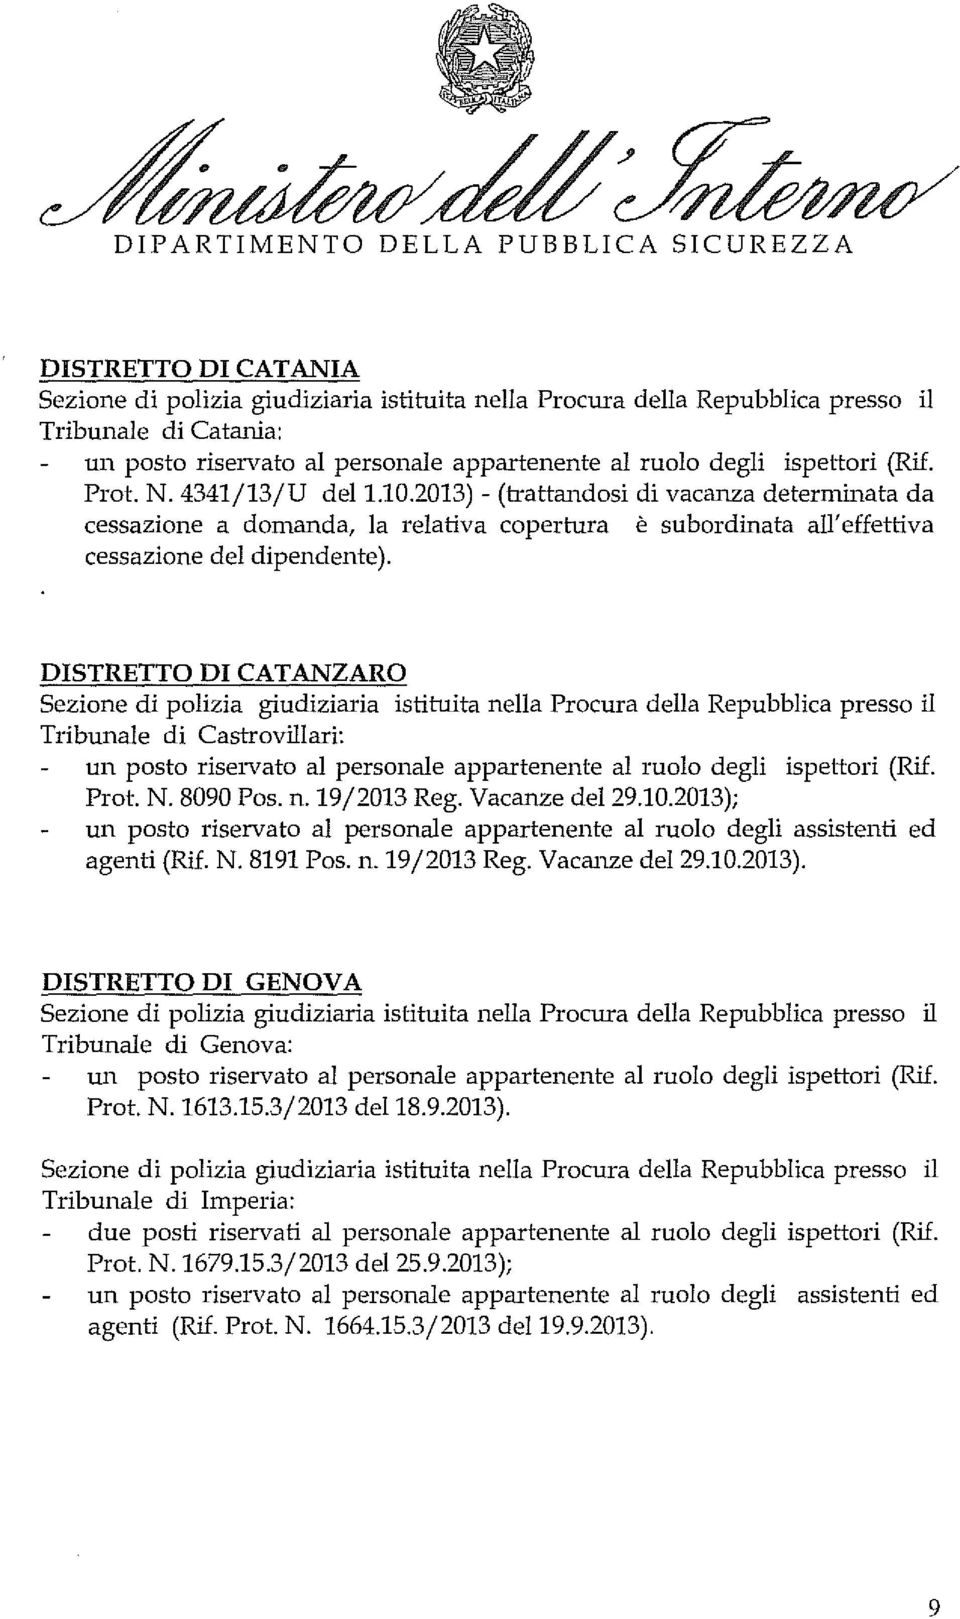 DISTRETTO DI CATANZARO Tribunale di Castrovillari: Prot. N. 8090 Pos. n. 19/2013 Reg. Vacanze del29.10.2013); agenti (Rif. N. 8191 Pos. n.19/2013 Reg. Vacanze del29.10.2013). DISTRETTO DI GENOVA Tribunale di Genova: Prot.